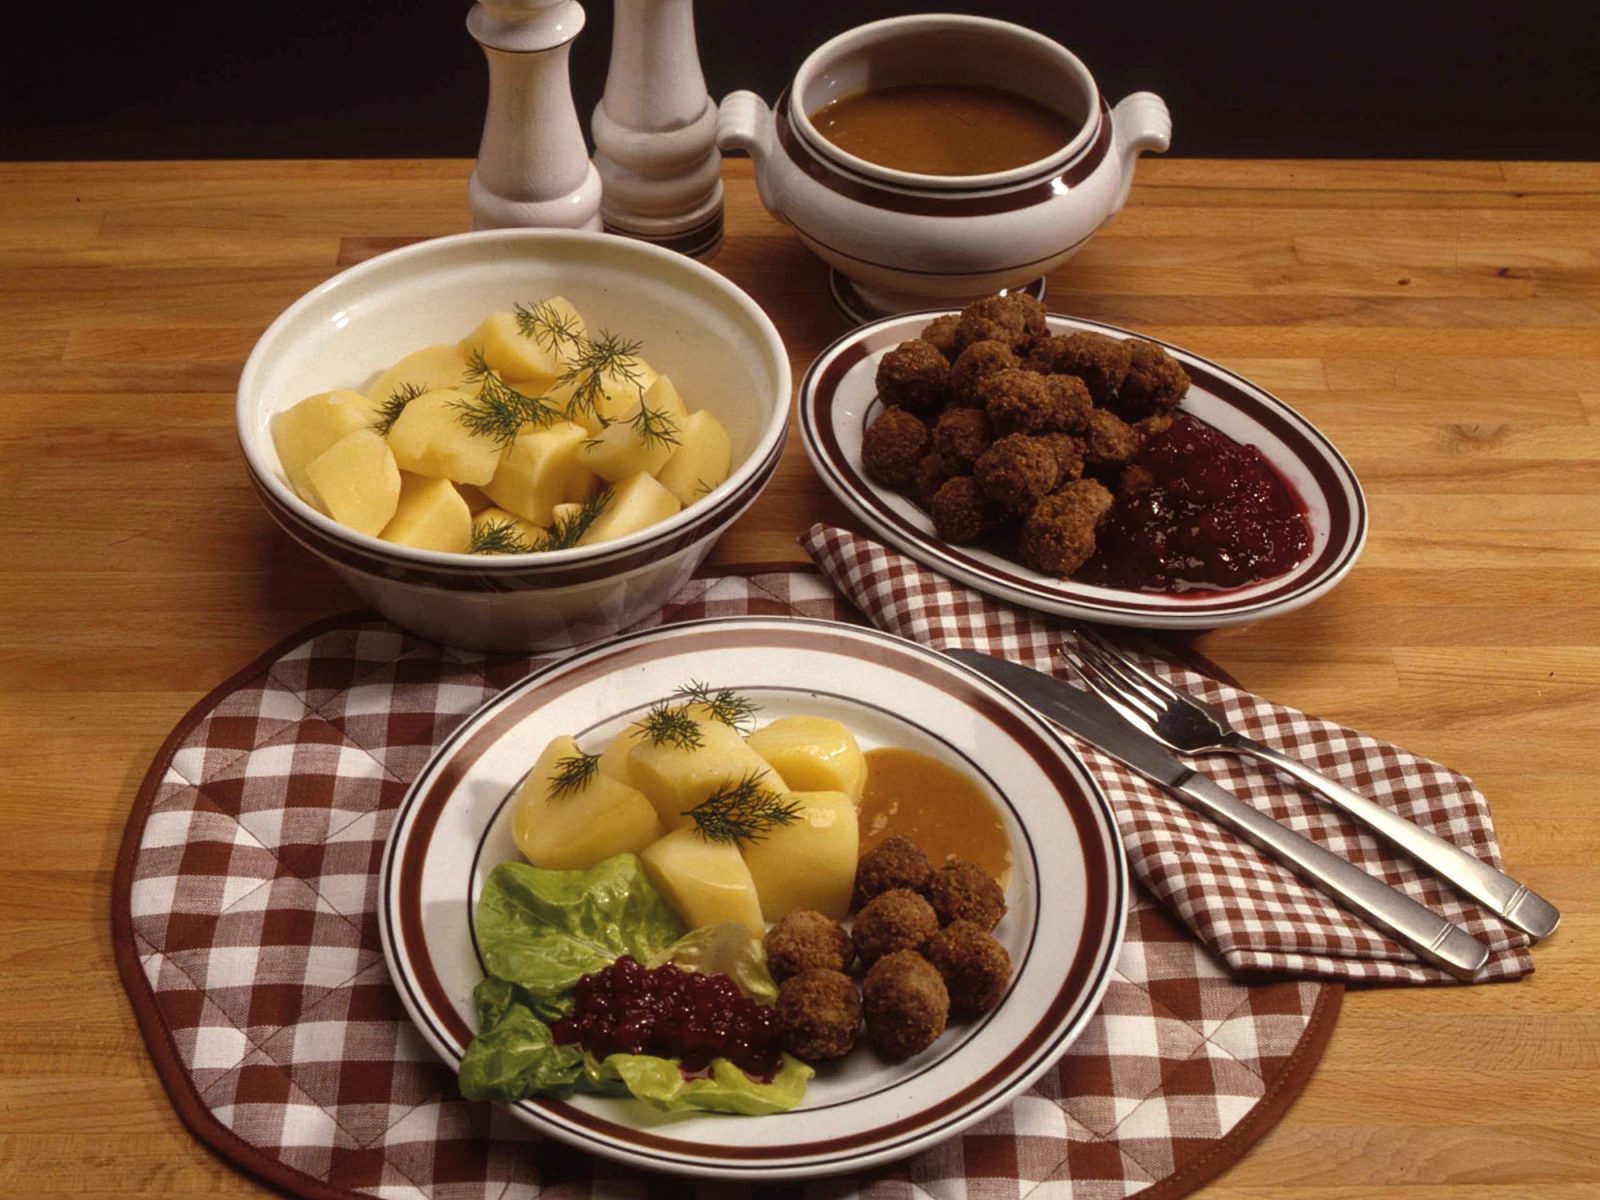 Assiette et plats avec boulettes de viande suédoises, pommes de terre, sauce brune et confiture d’airelles.